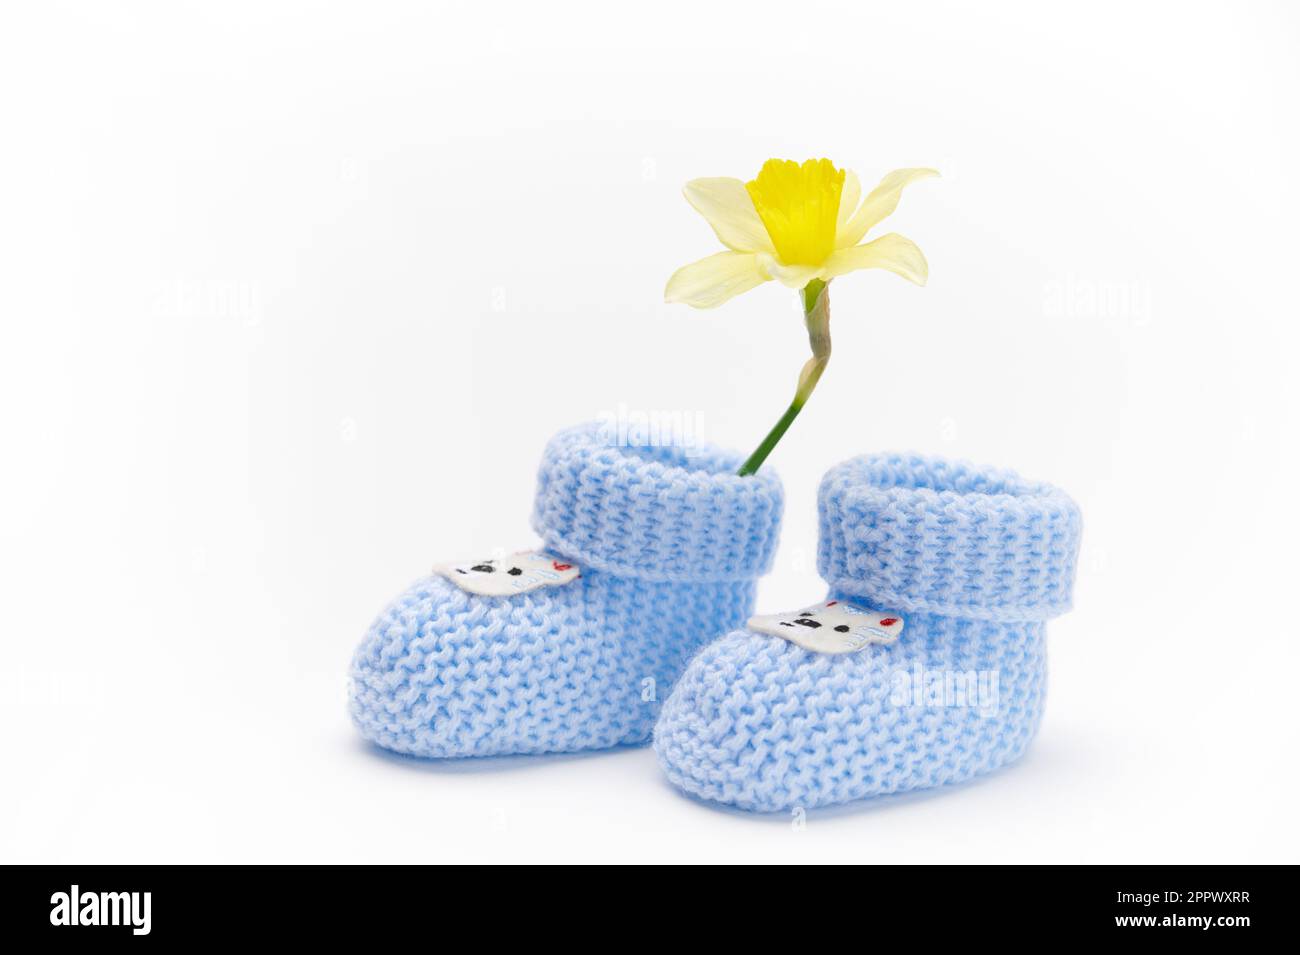 Ein Paar handgefertigte blaue gestrickte Babyschühchen und gelbe Narzissenblume, isoliert auf weißem Hintergrund. Neugeborenenbekleidung und -Mode. Ich erwarte ein Baby. Stockfoto